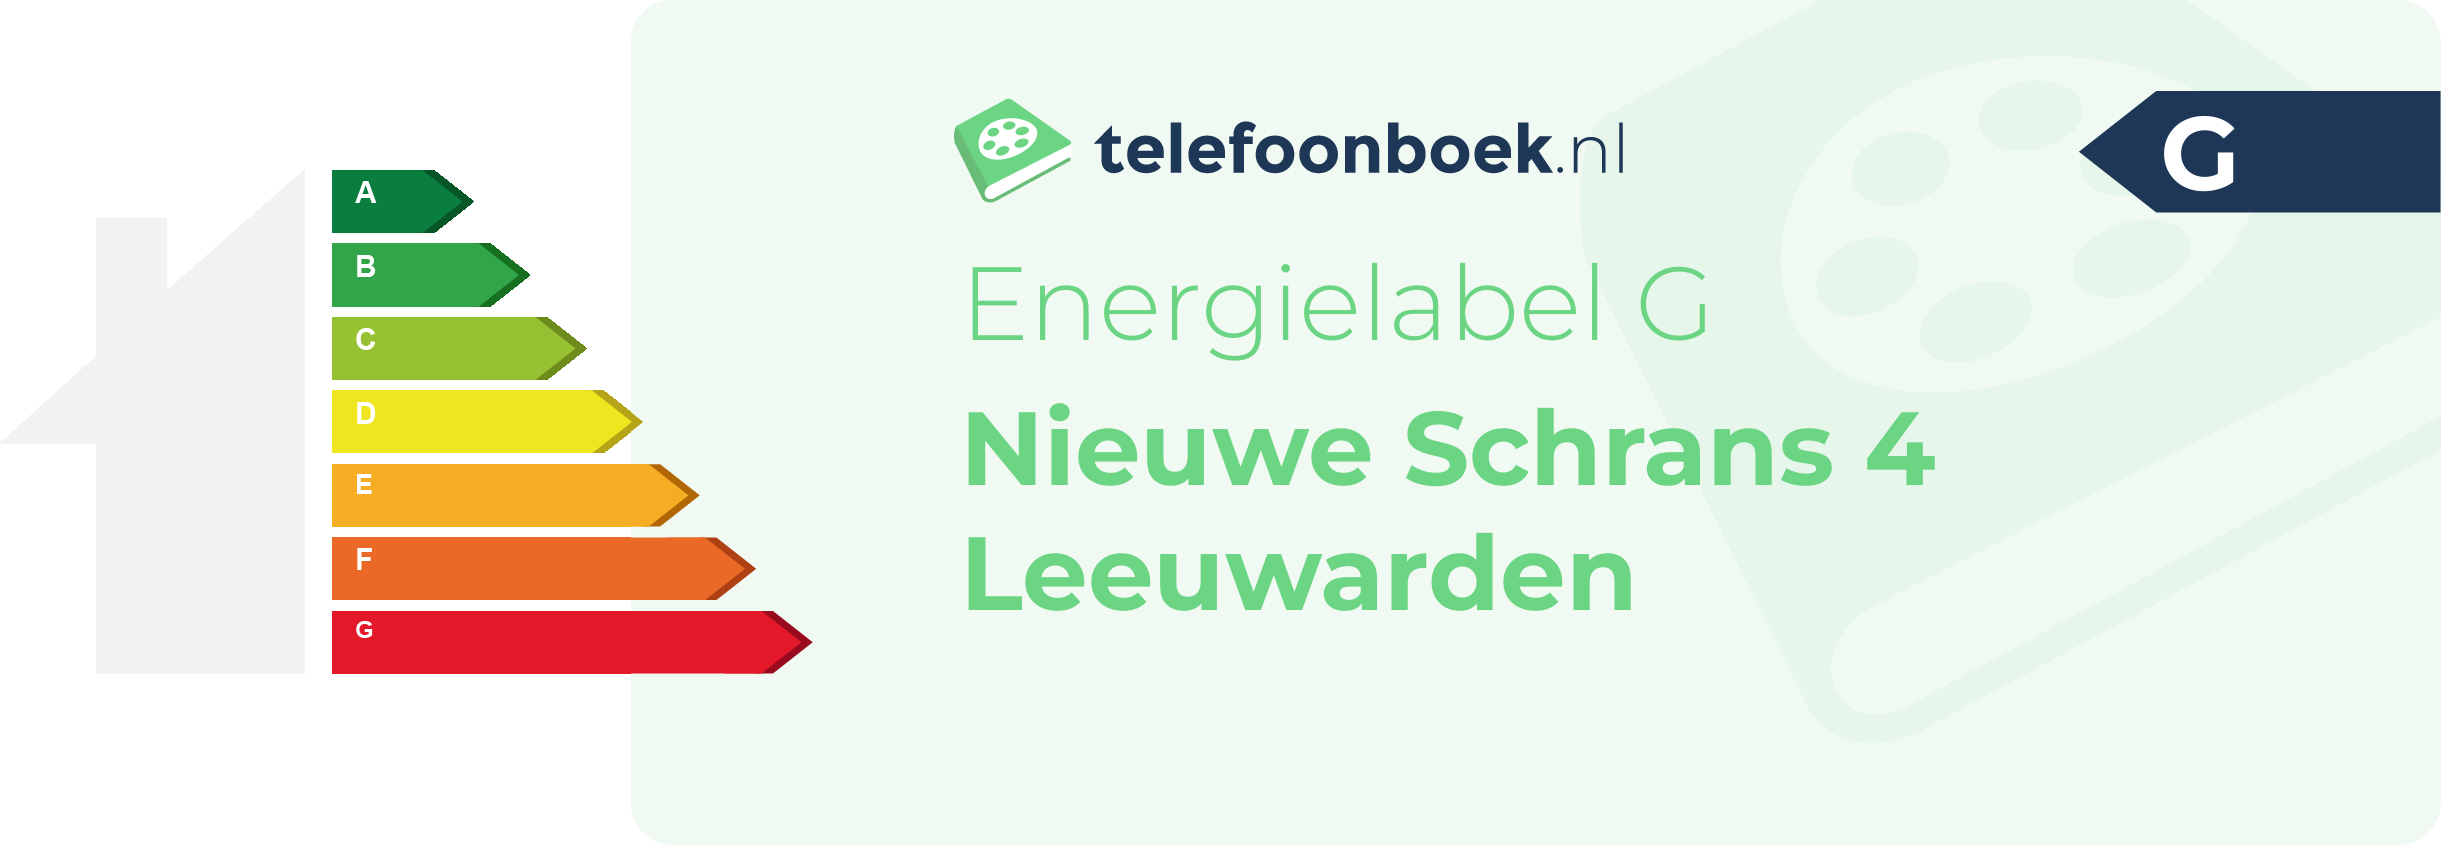 Energielabel Nieuwe Schrans 4 Leeuwarden